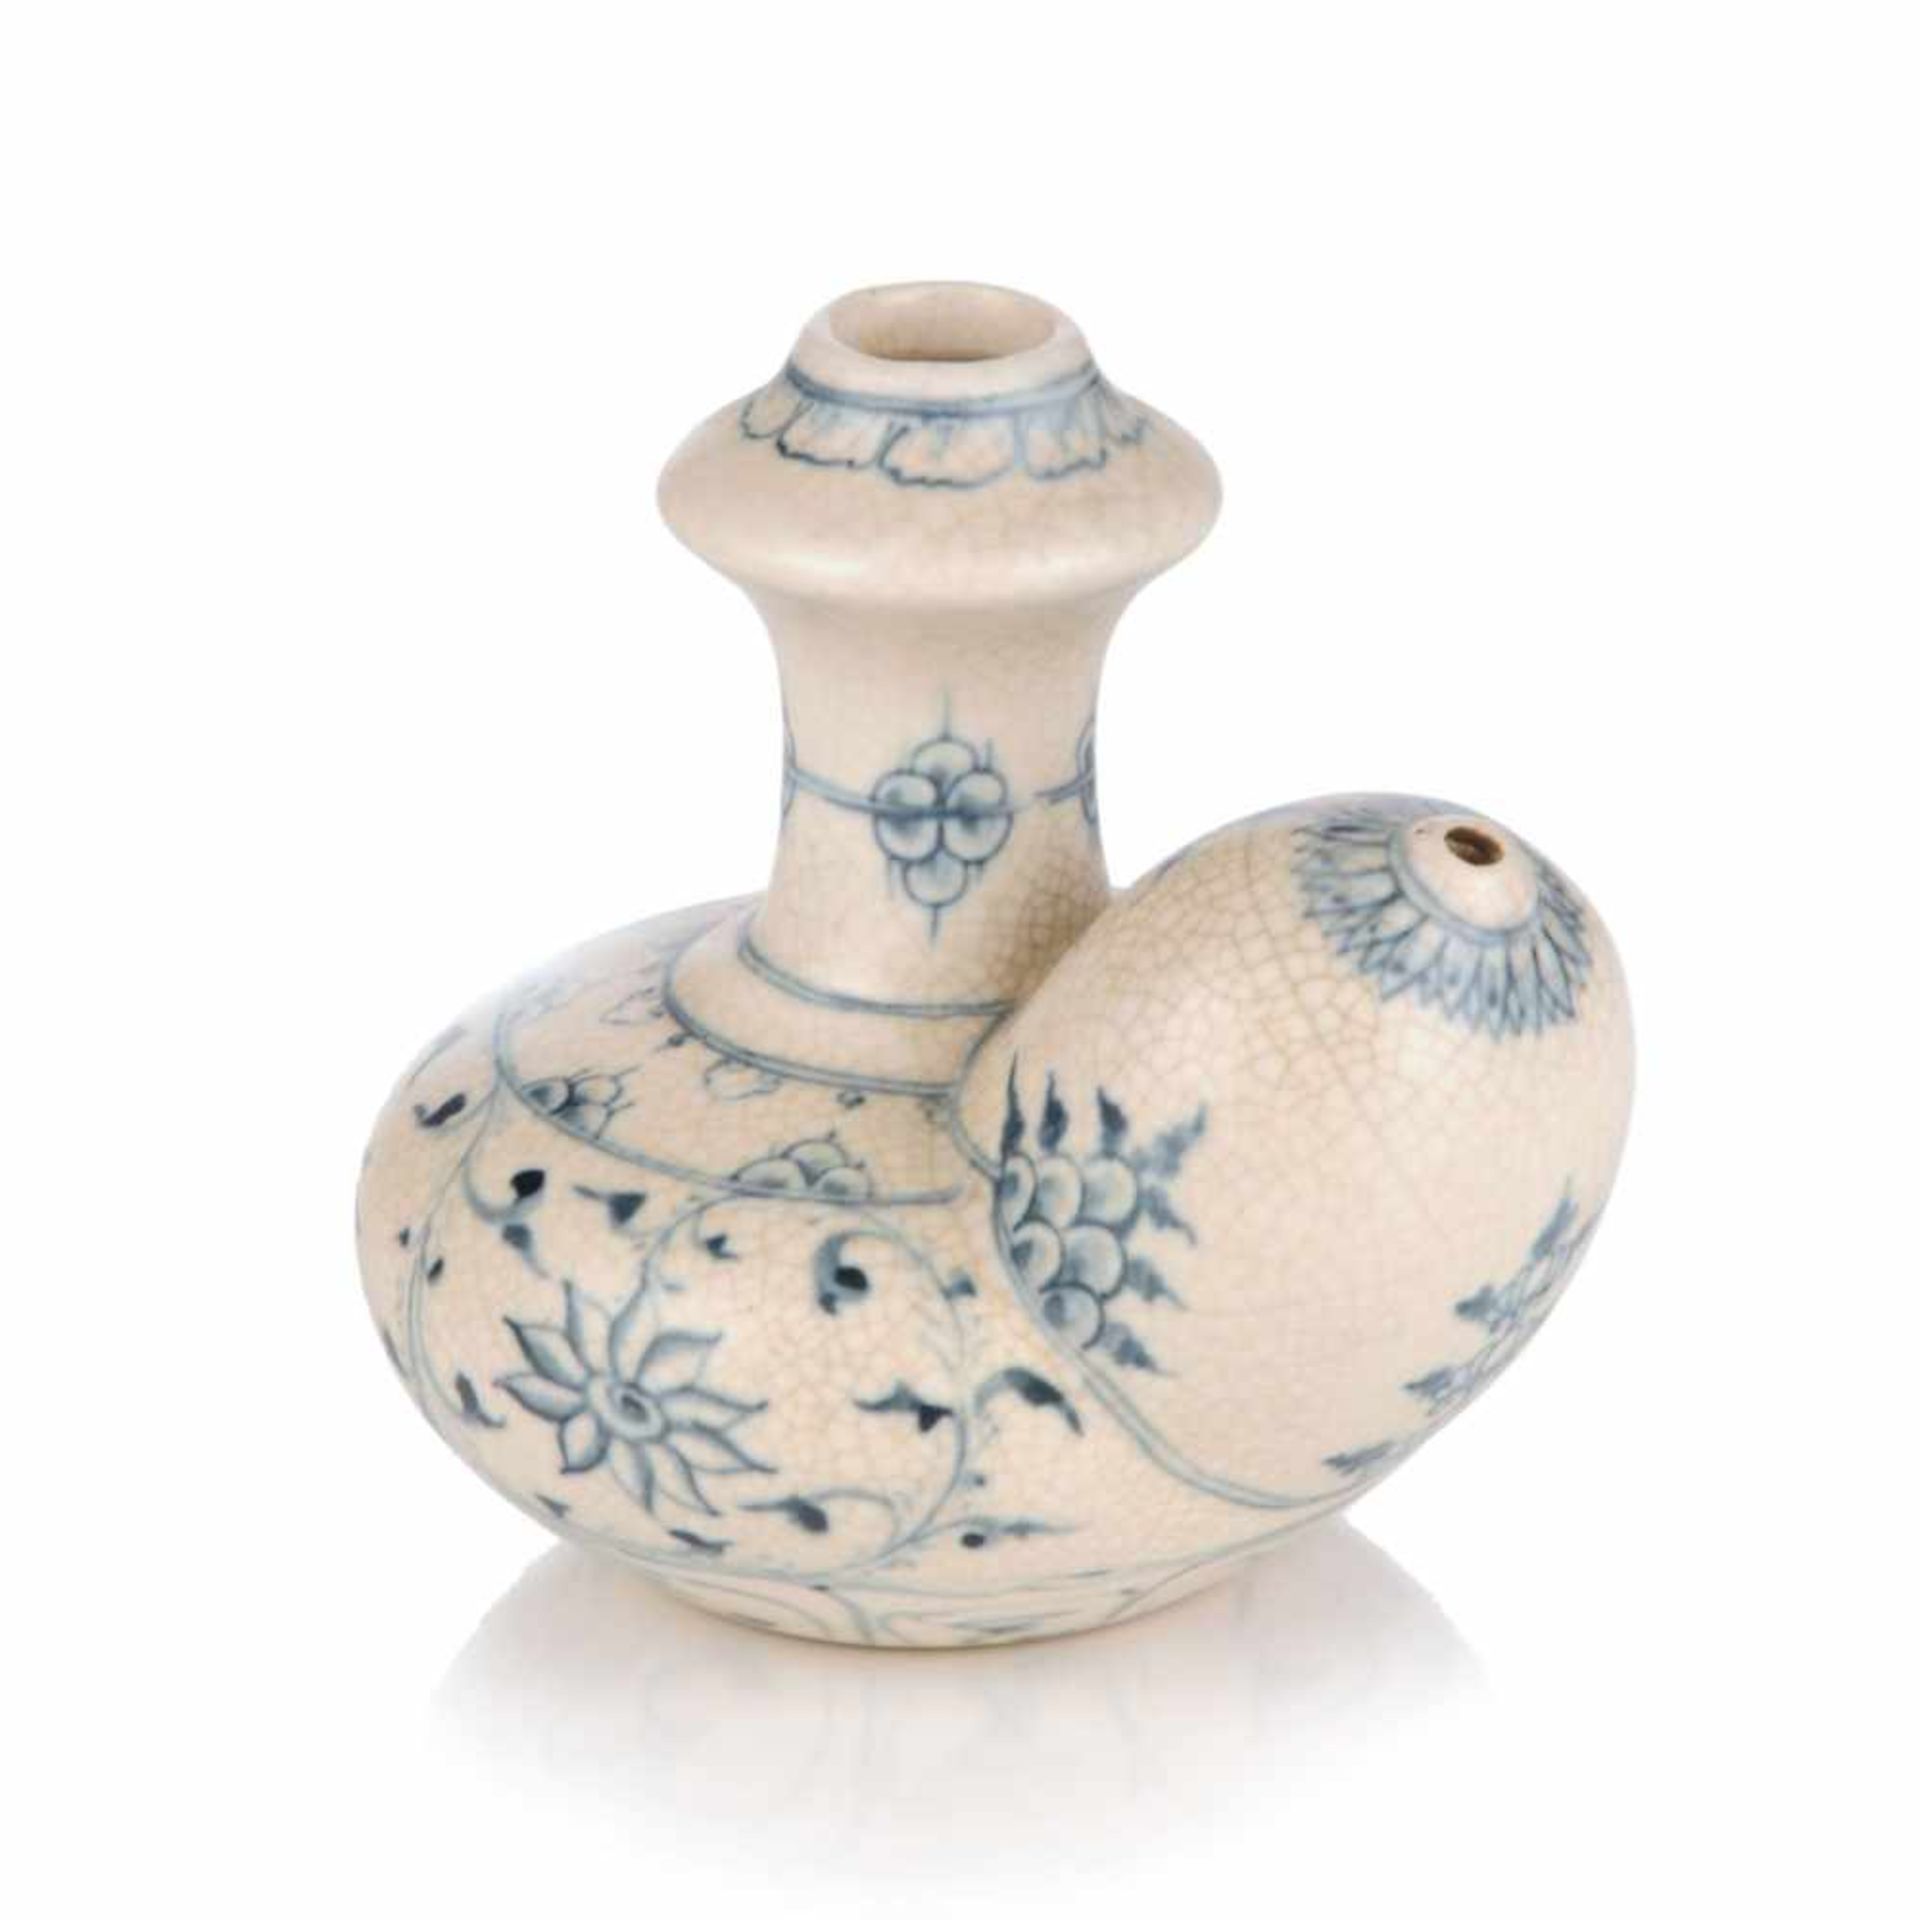 Kendi (Ausguss- oder Trinkgefäß). Wohl Vietnamesisch. 20. Jh.Keramik, weißer Scherben, weiße